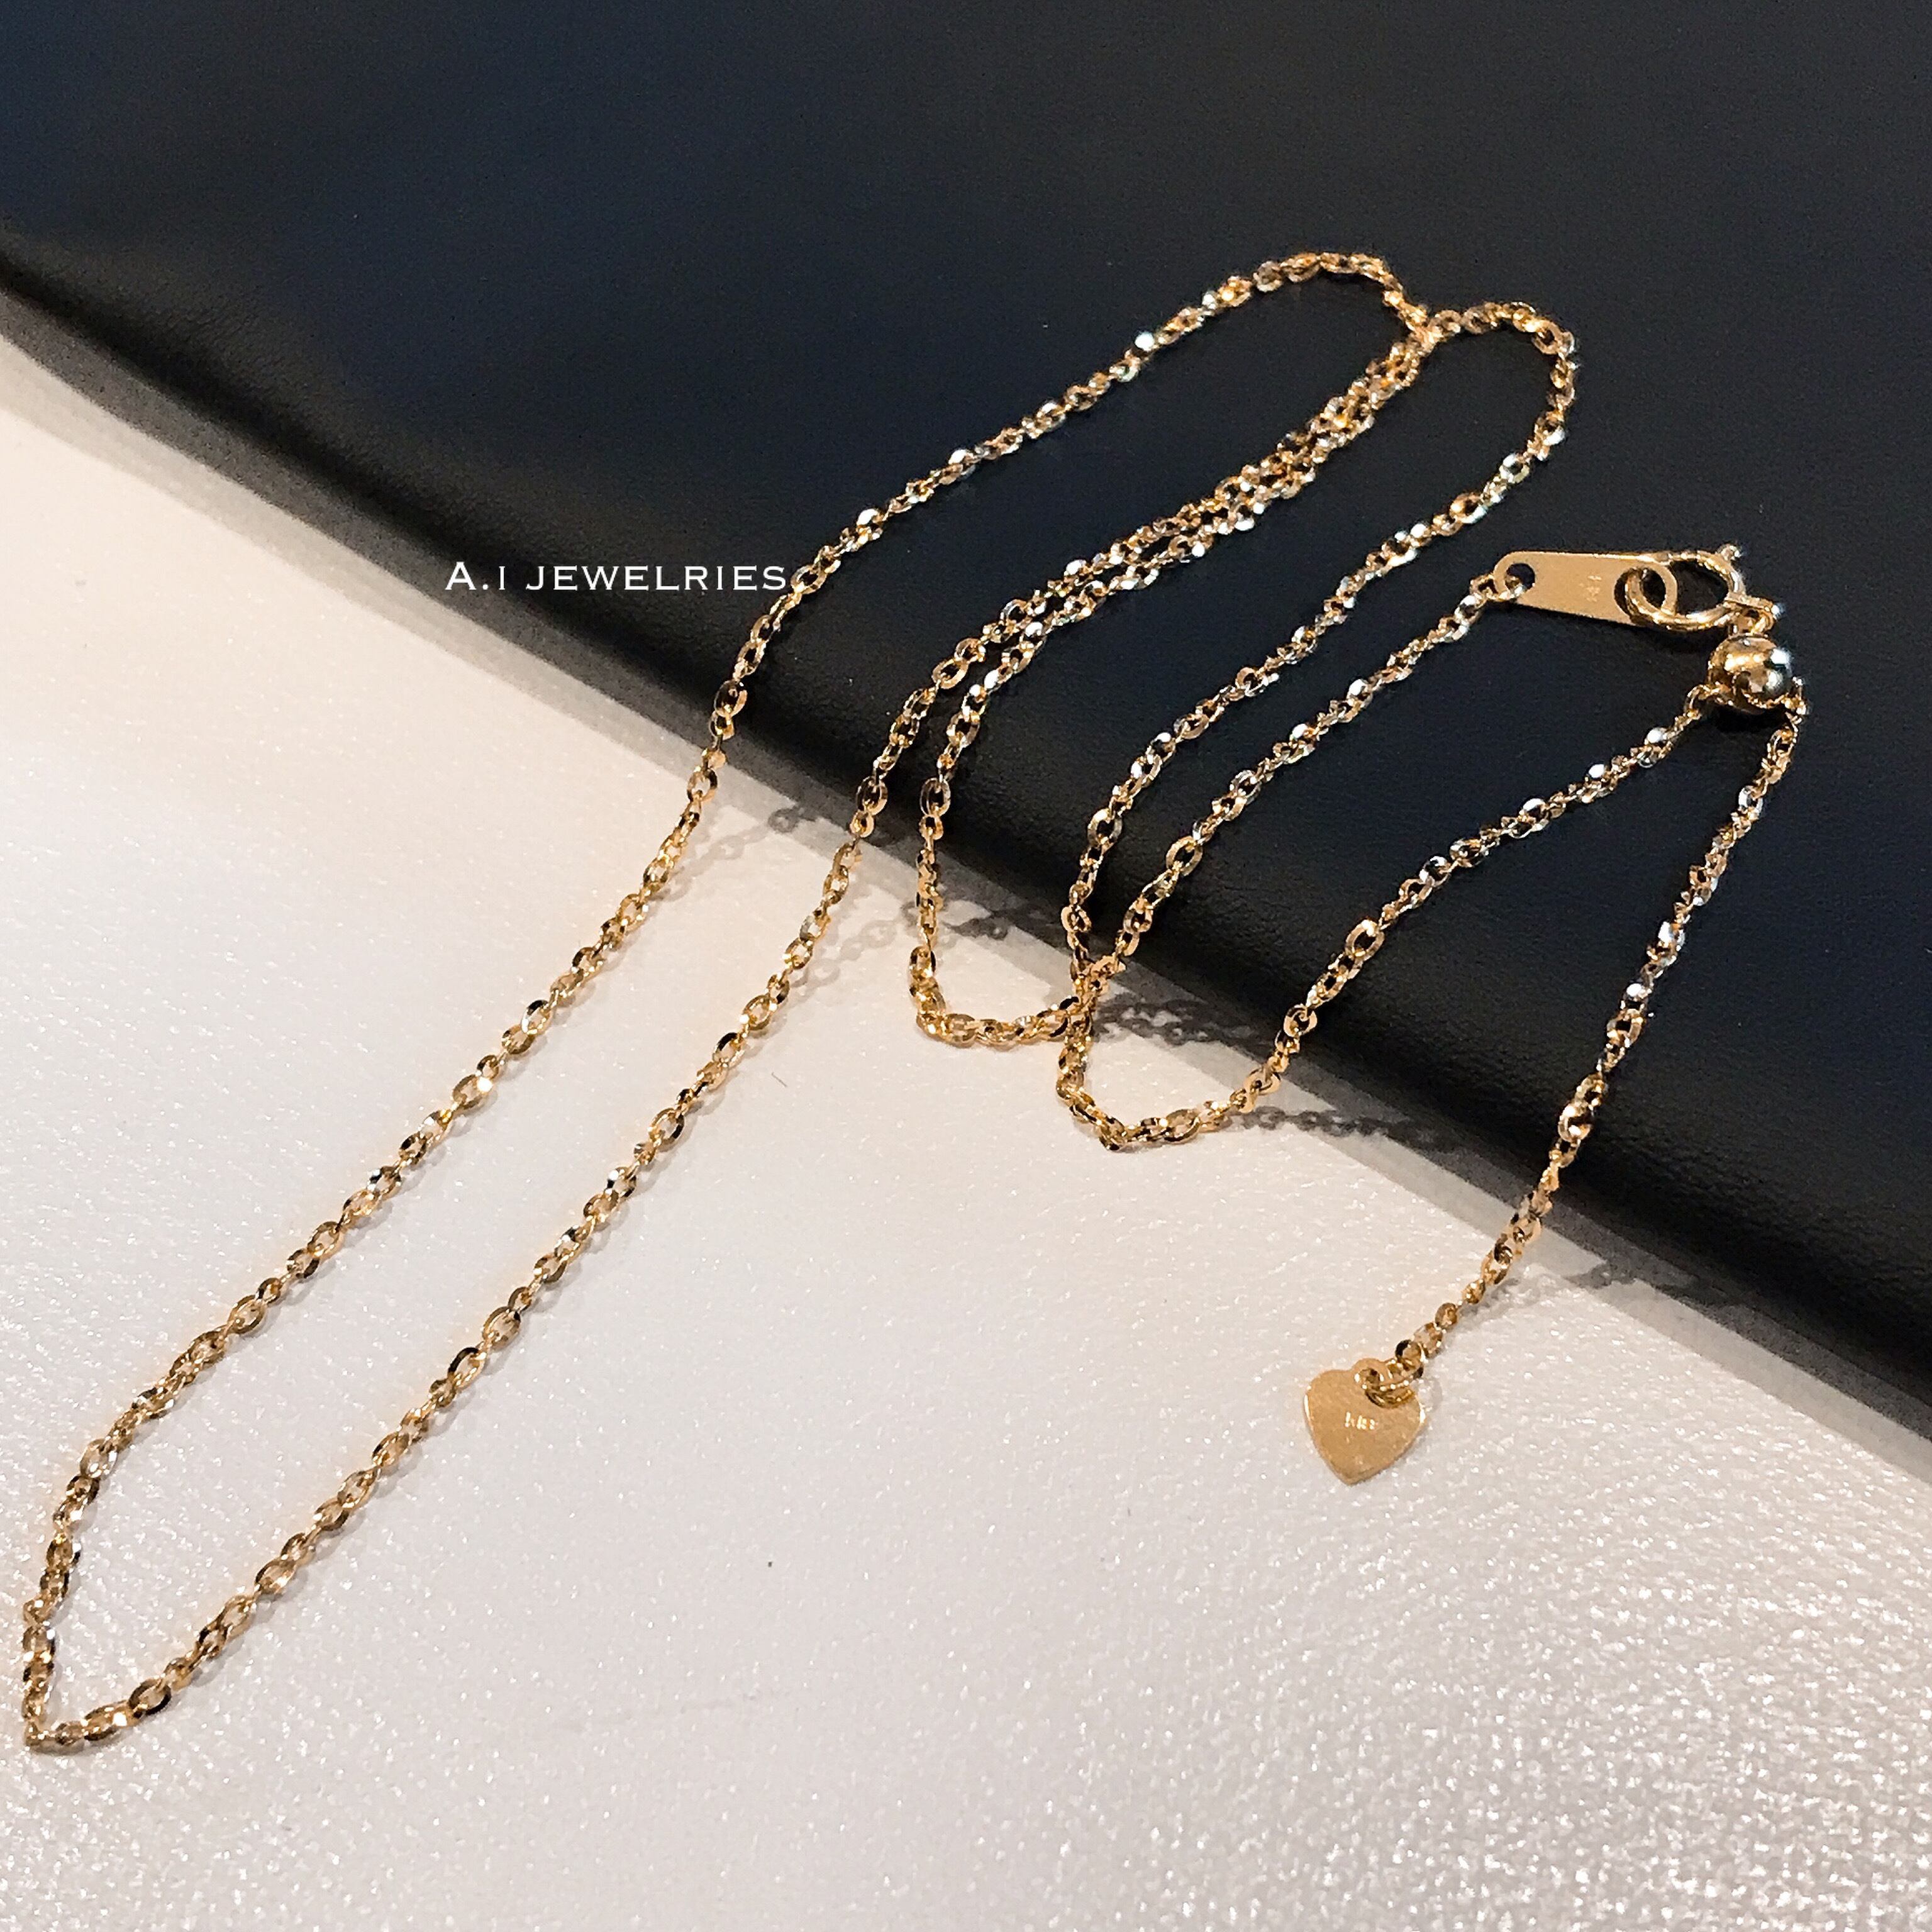 K18 18金 アズキ ネックレス チェーン 50センチ スライドアジャスター K18 Azuki Necklace Chain 50cm A I Jewelries エイアイジュエリーズ